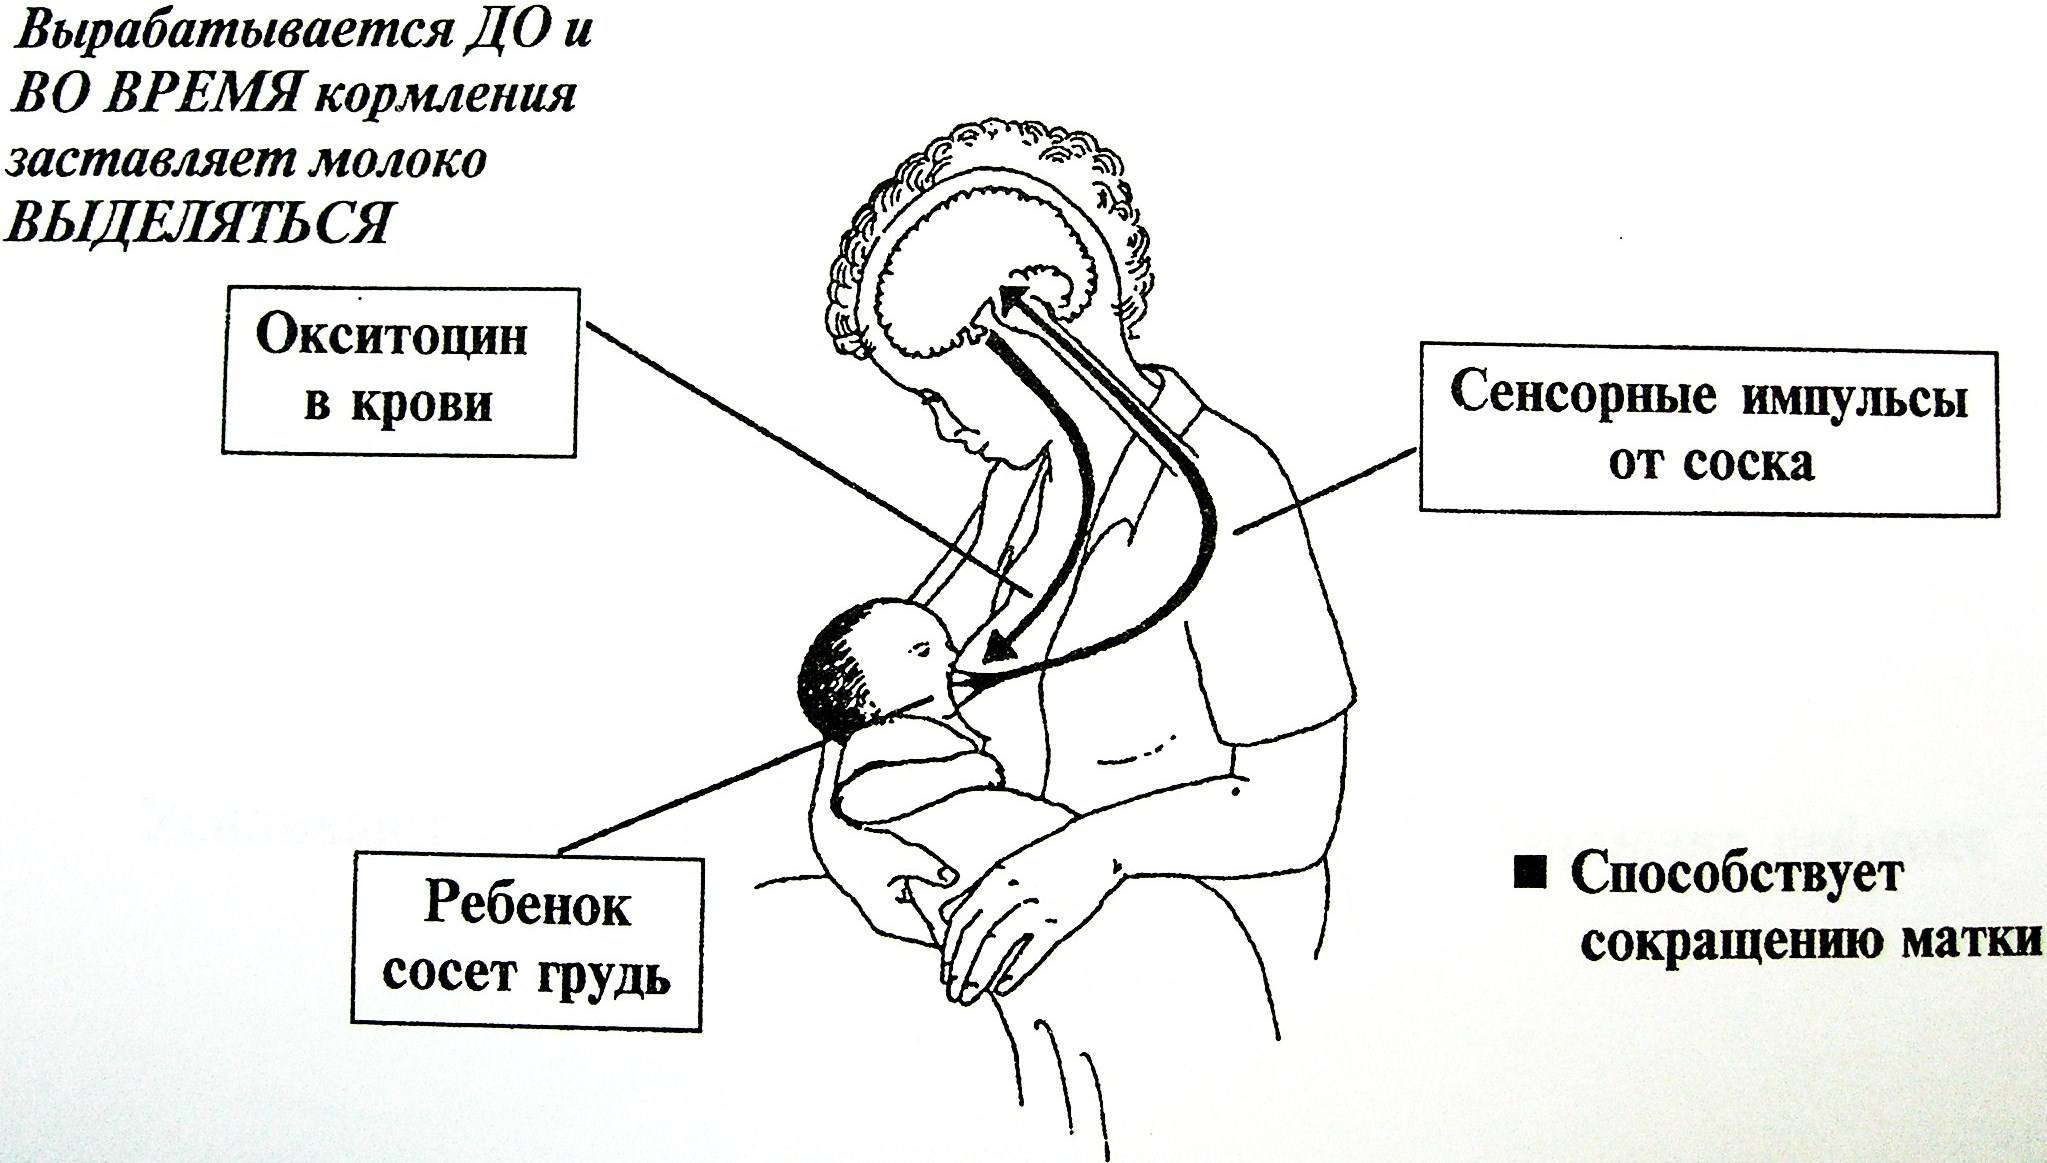 Фазы лактации. Схема рефлекса окситоцина и пролактина. Механизм выделения грудного молока. Механизм сосания грудного молока ребенком. Рефлекс пролактина и окситоцина.